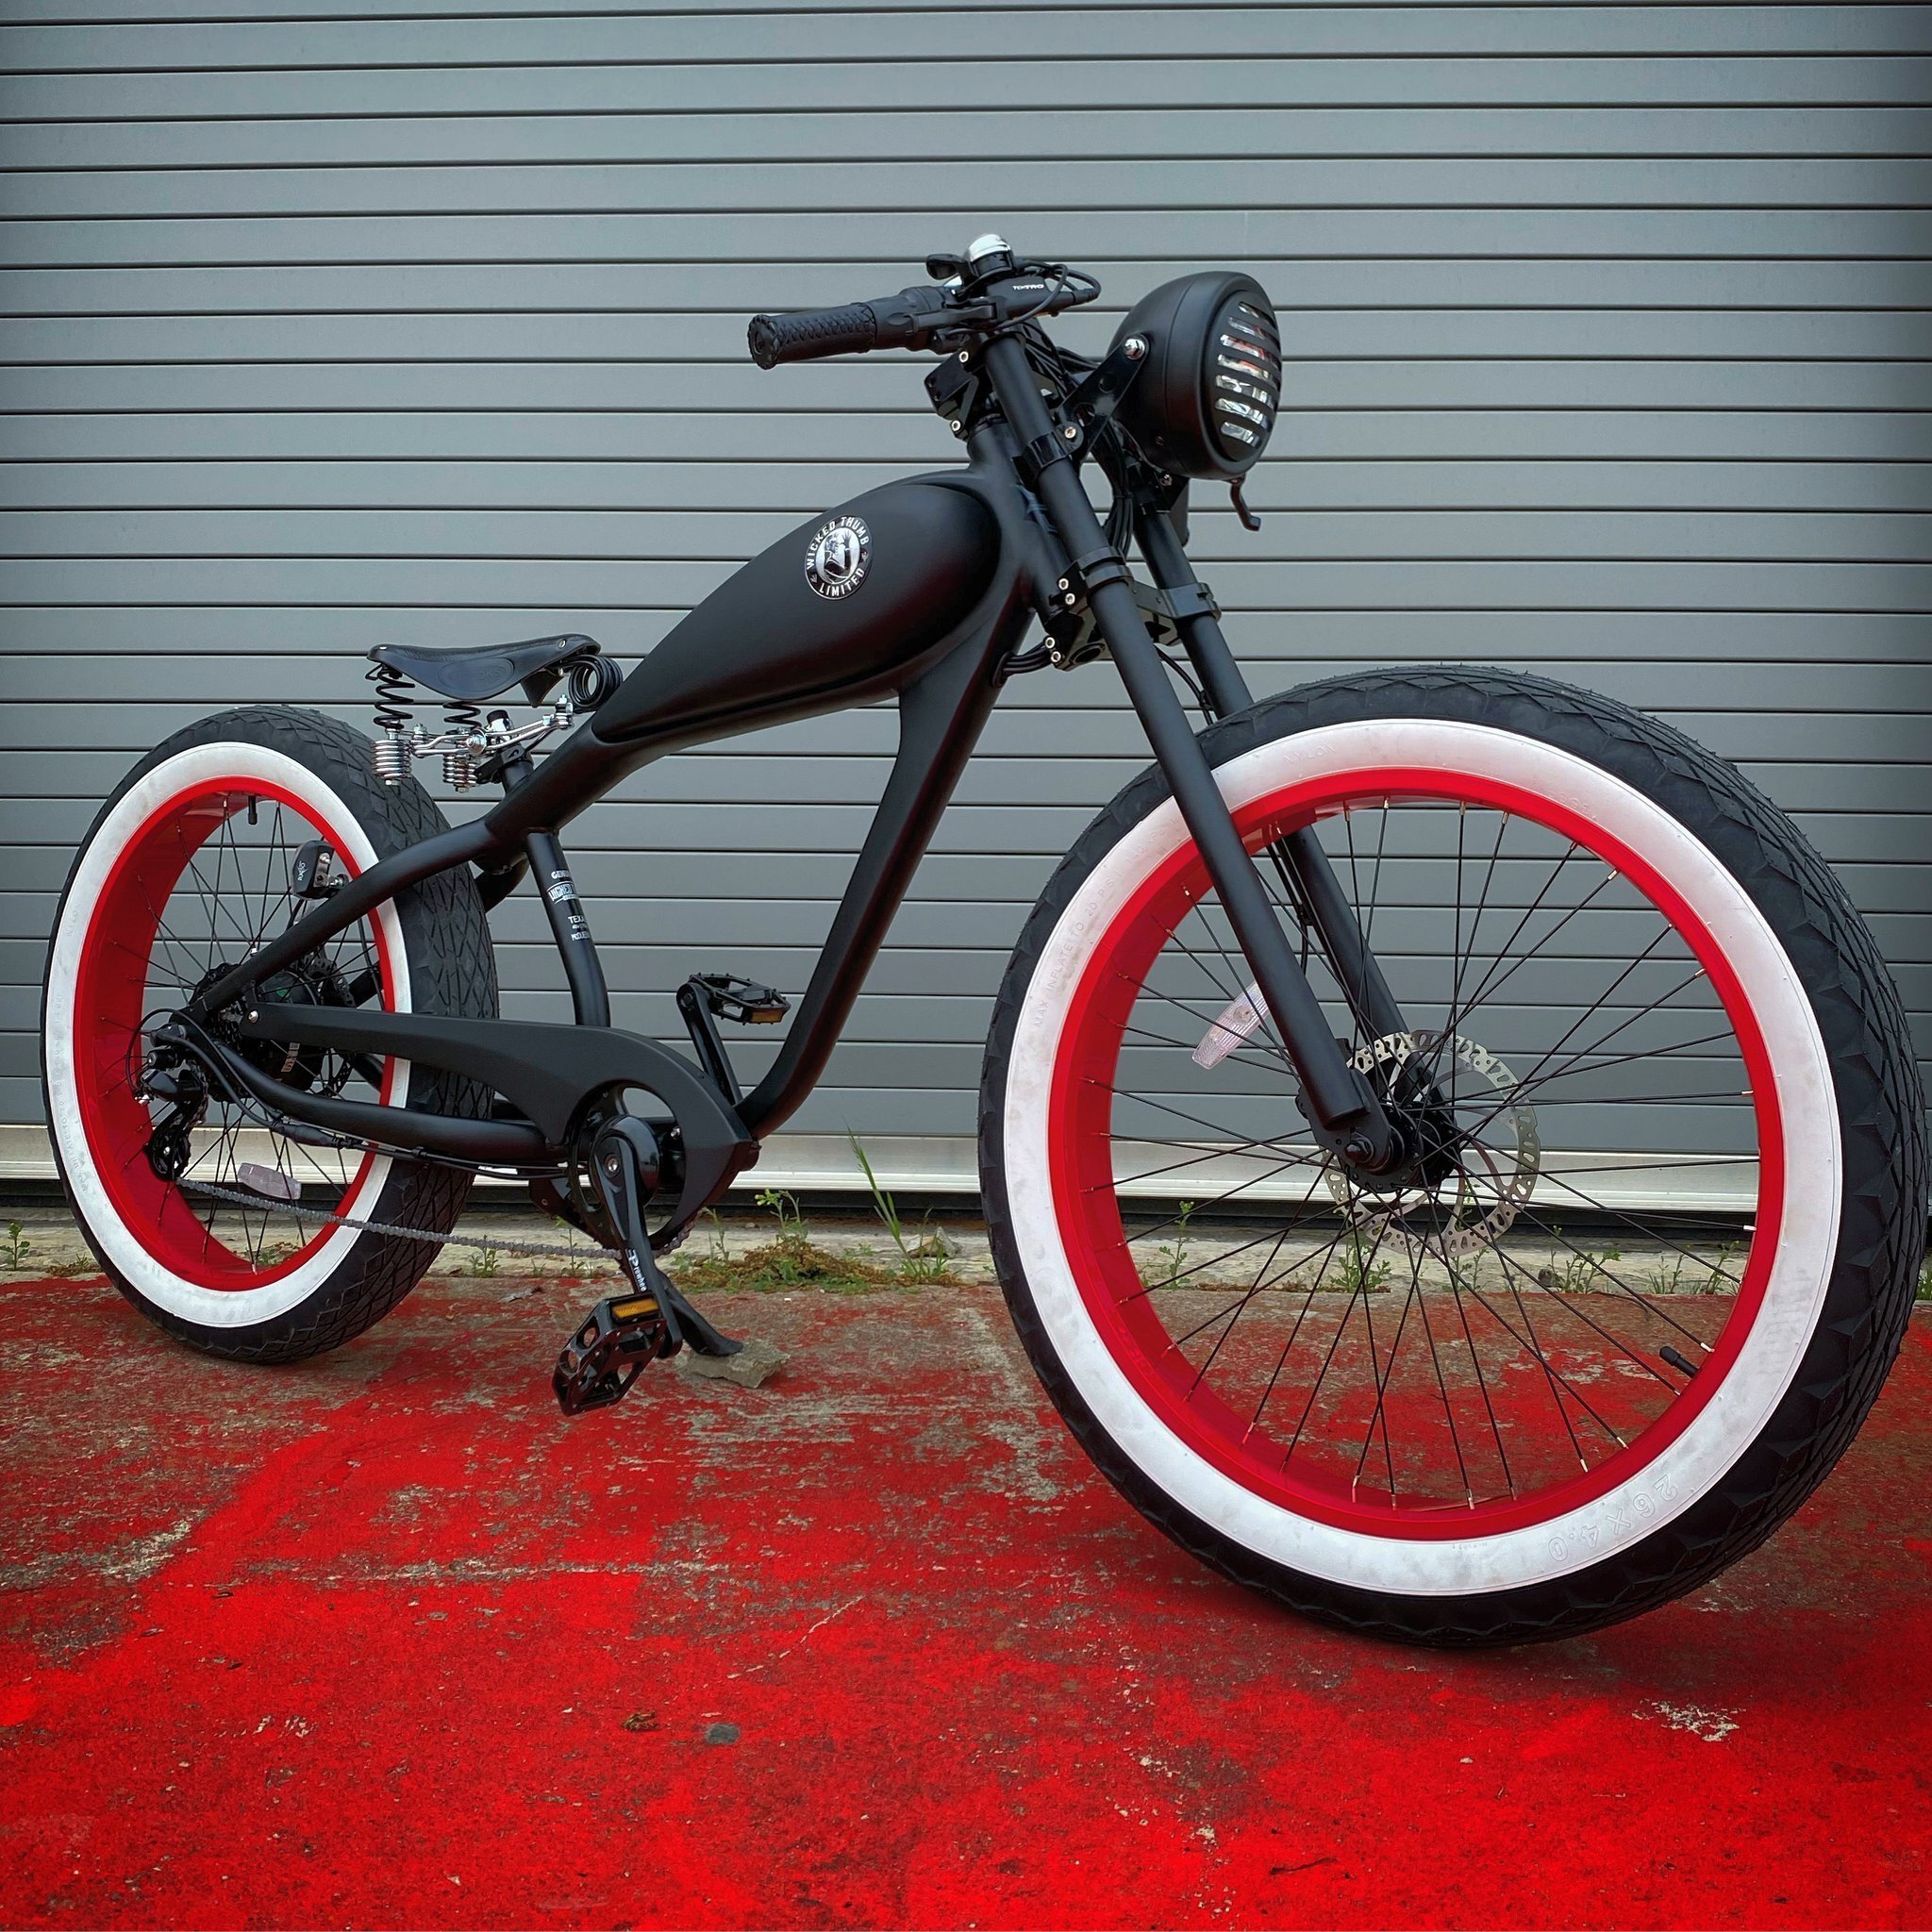 ✨2022 Nowy zewnętrzny rower elektryczny✨